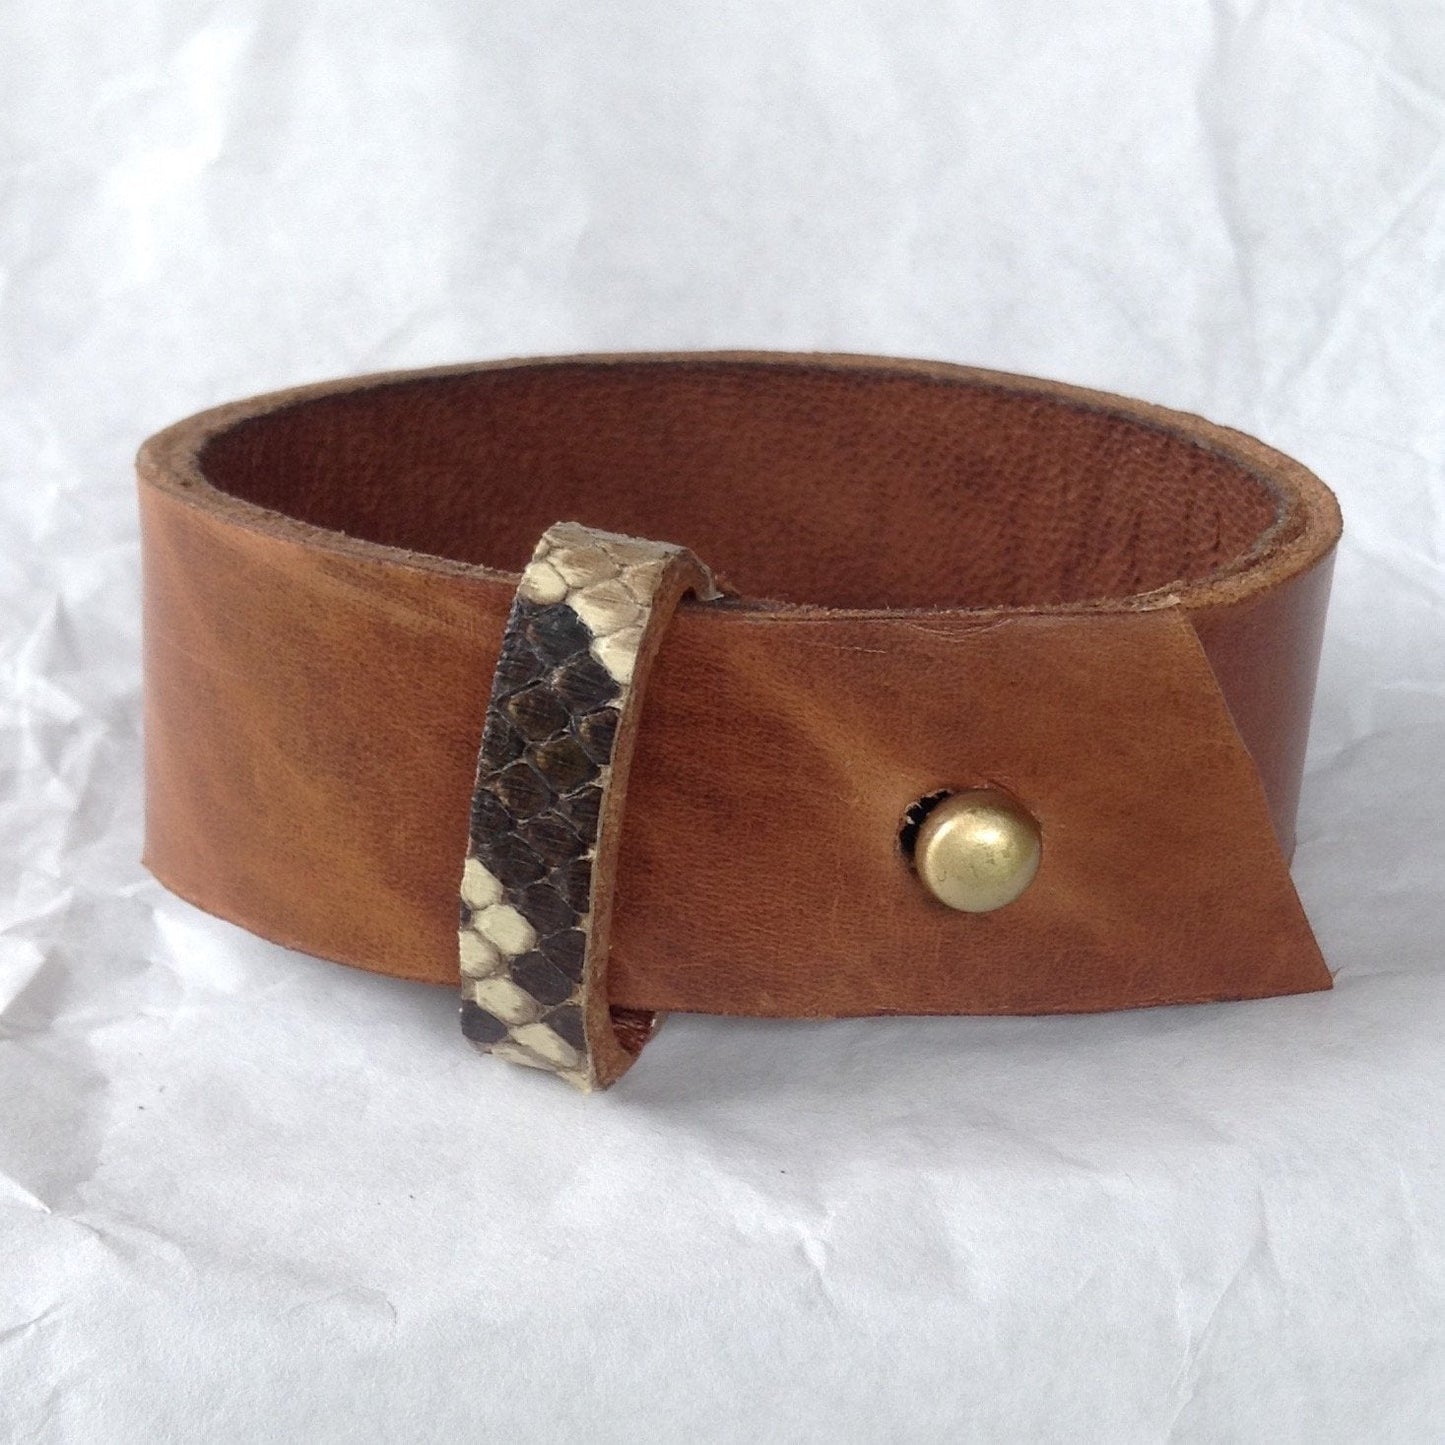 Belt cuff style Python strap, goatskin lined Caramel leather bracelet.